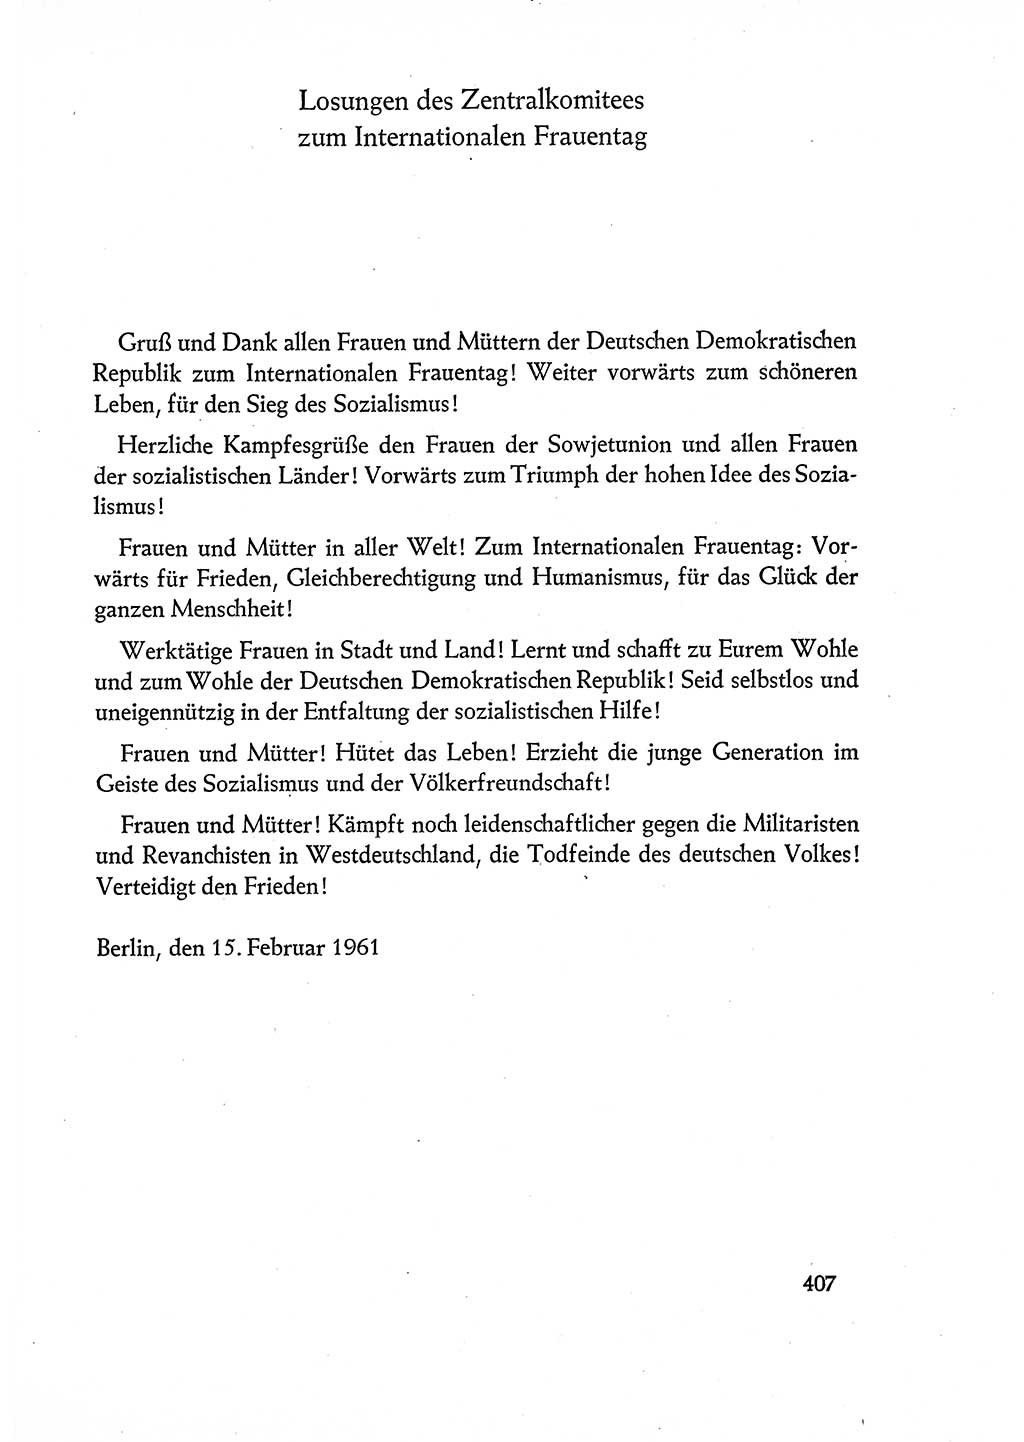 Dokumente der Sozialistischen Einheitspartei Deutschlands (SED) [Deutsche Demokratische Republik (DDR)] 1960-1961, Seite 407 (Dok. SED DDR 1960-1961, S. 407)